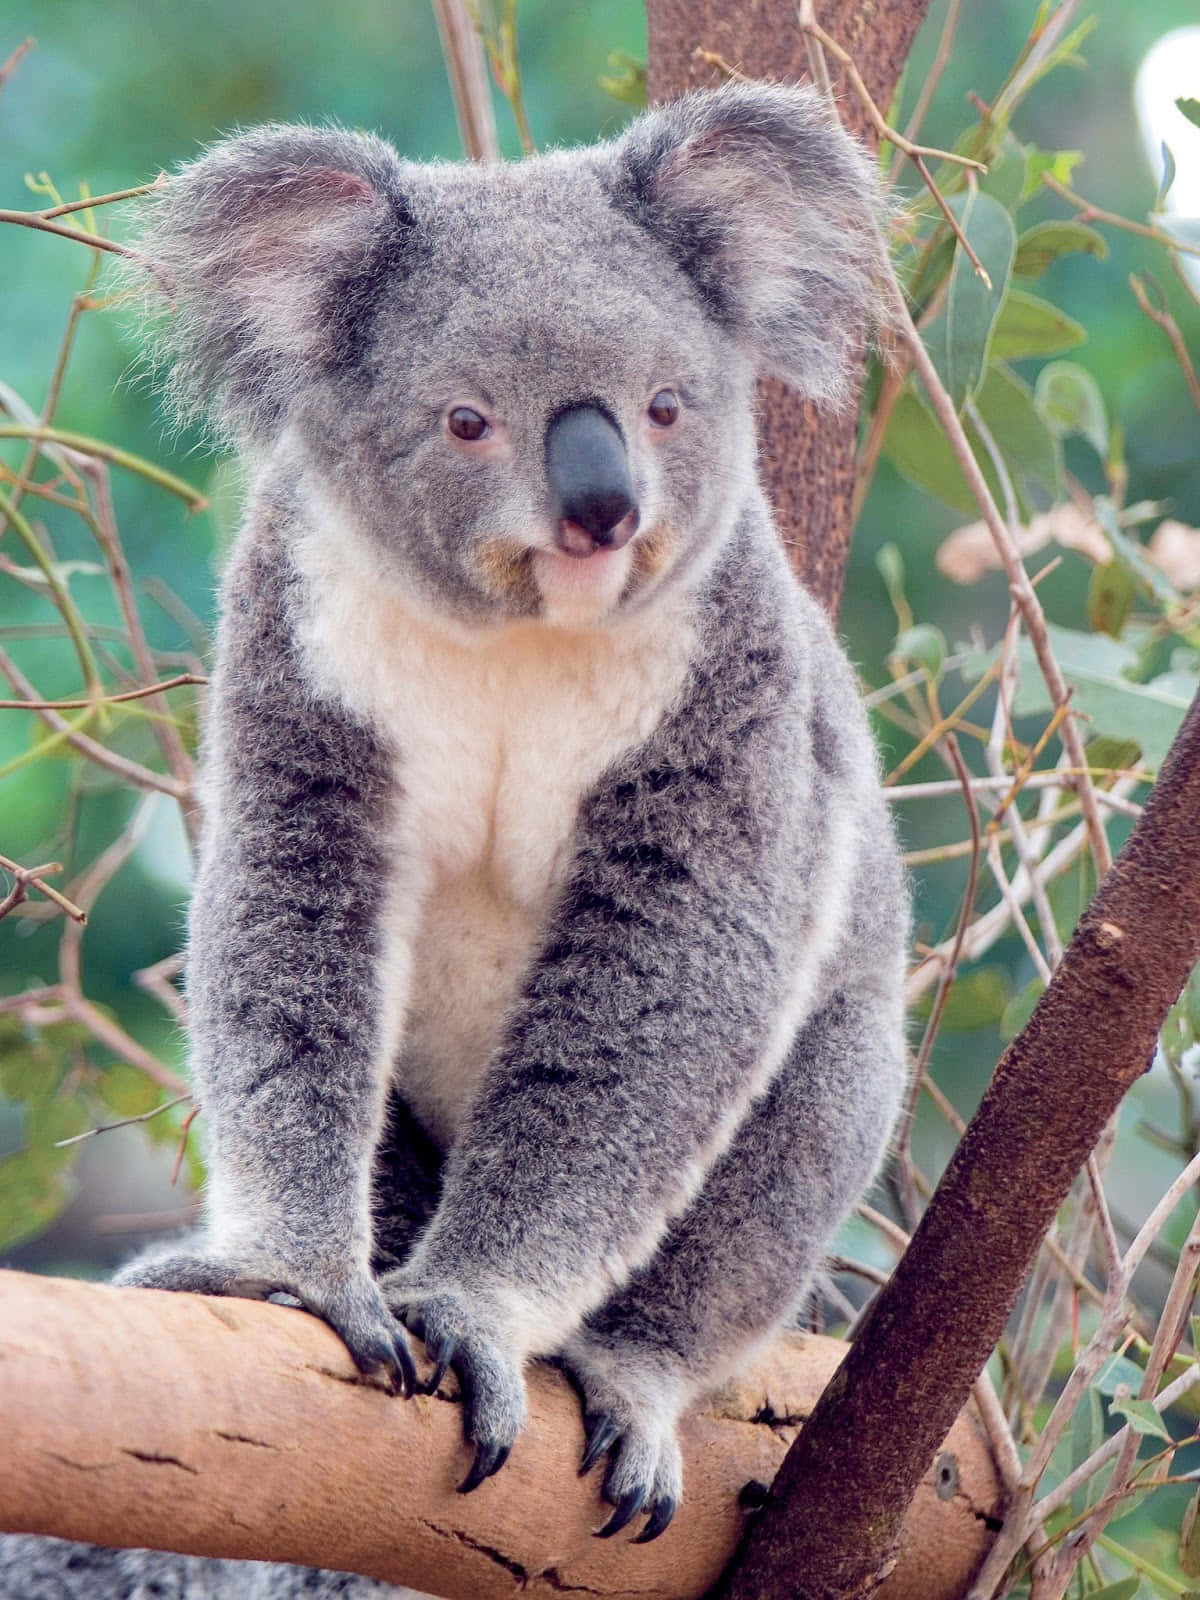 Iconanazionale Dell'australia: Il Koala